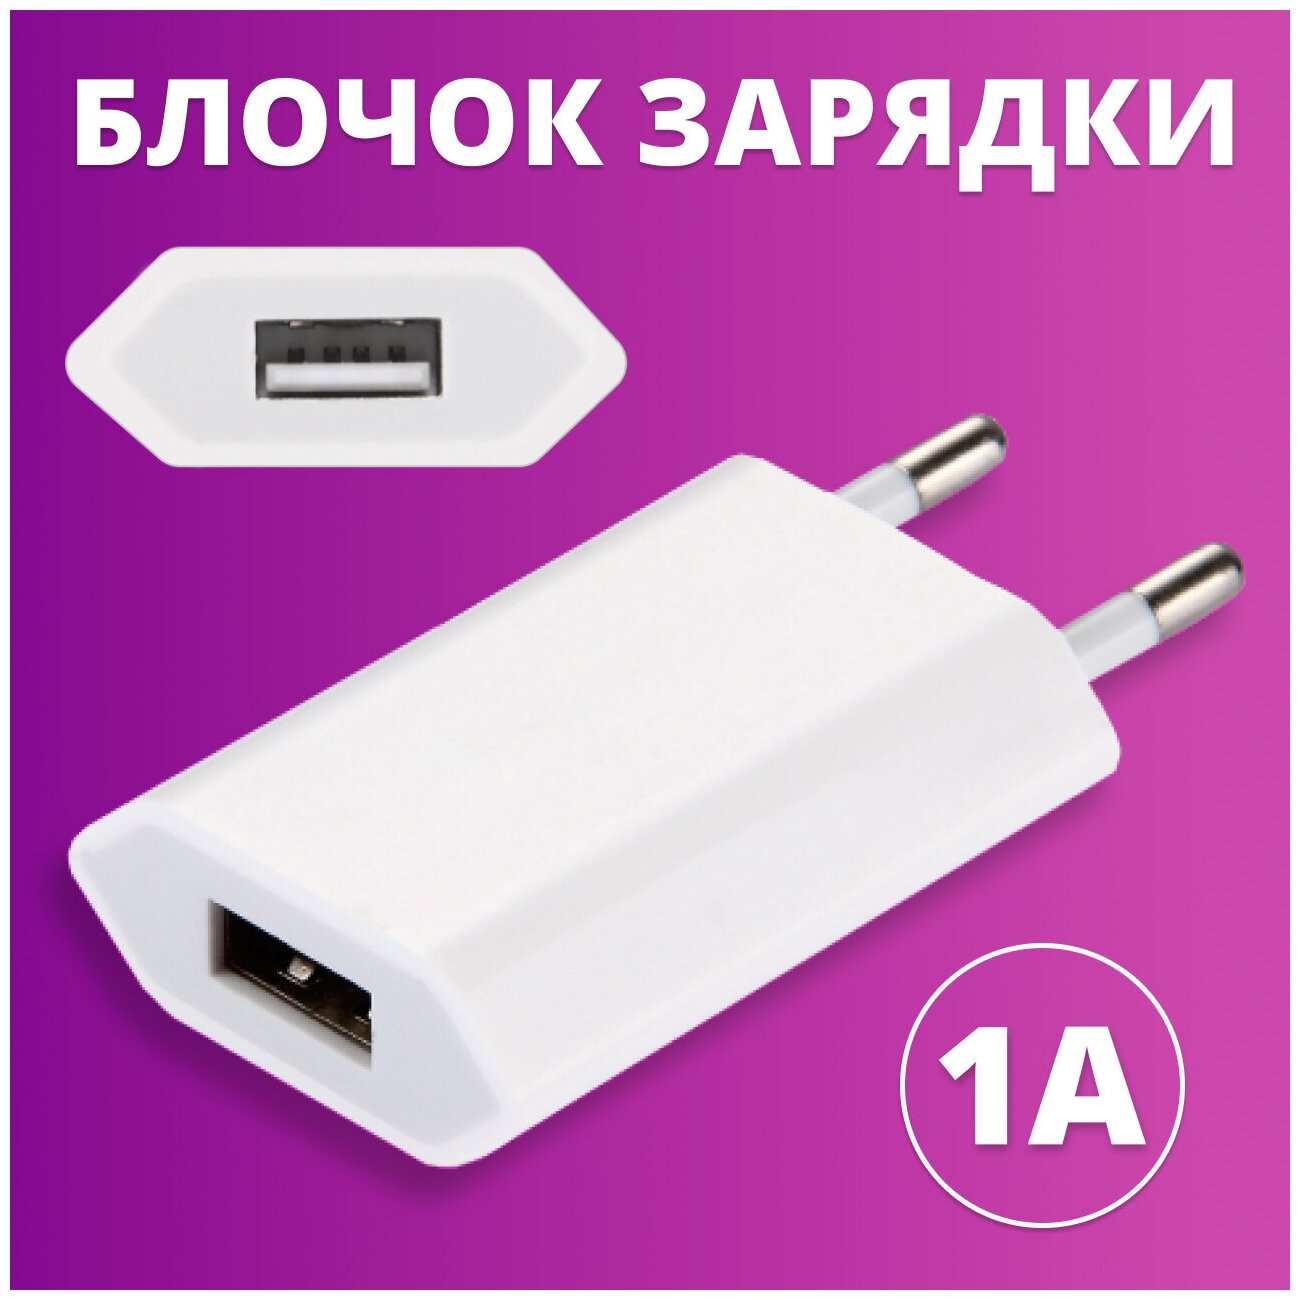 Сетевое зарядное устройство для телефона Apple iPhone и Android / Зарядный блок USB / Зарядка для телефона/ Адаптер питания / Сетевой блочок ЗУ(Белый)